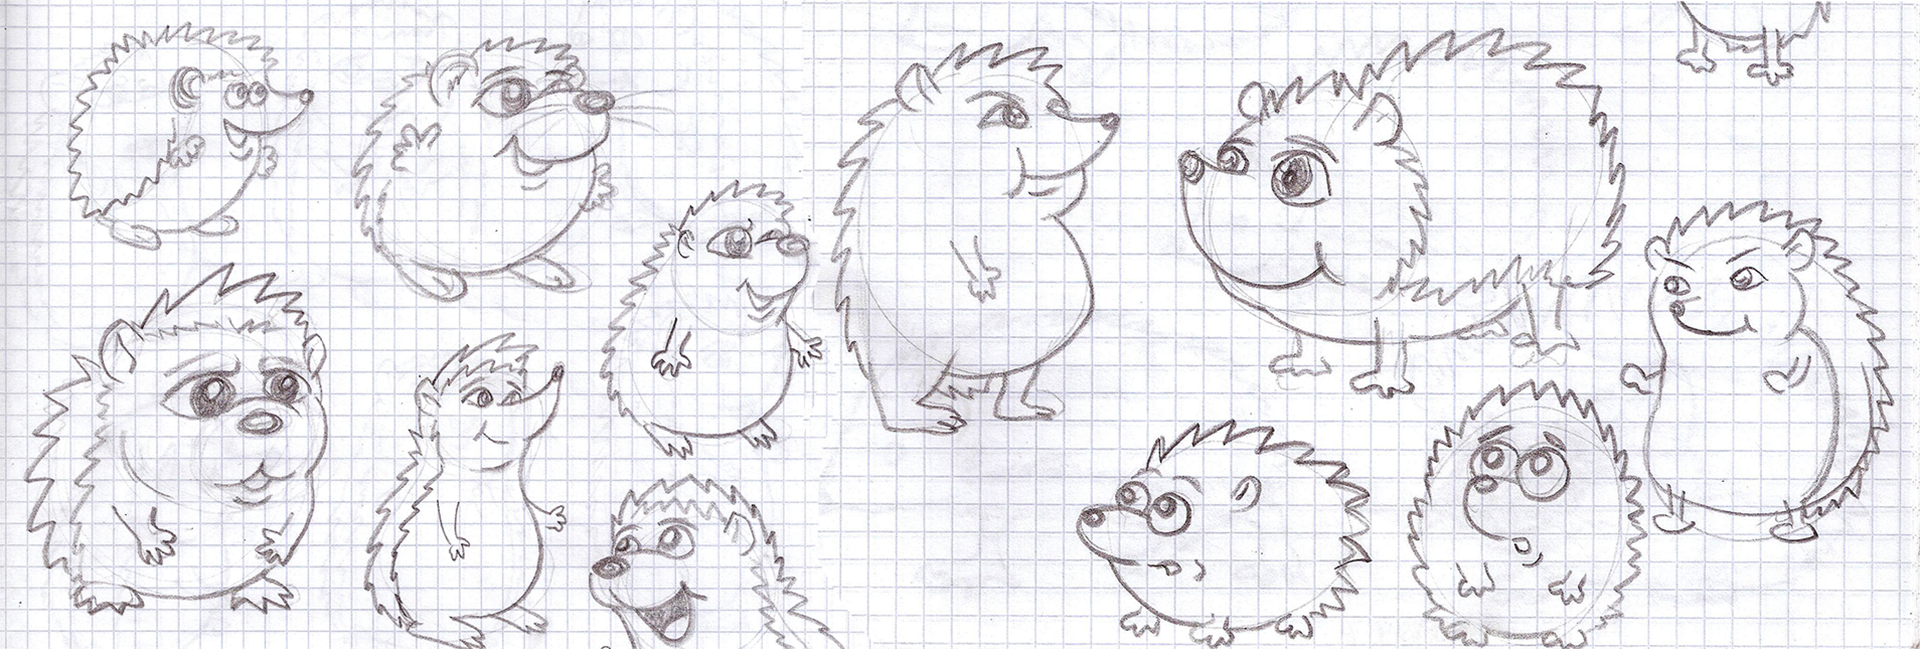 Seriál o ježkovi: díl 2 – první skici